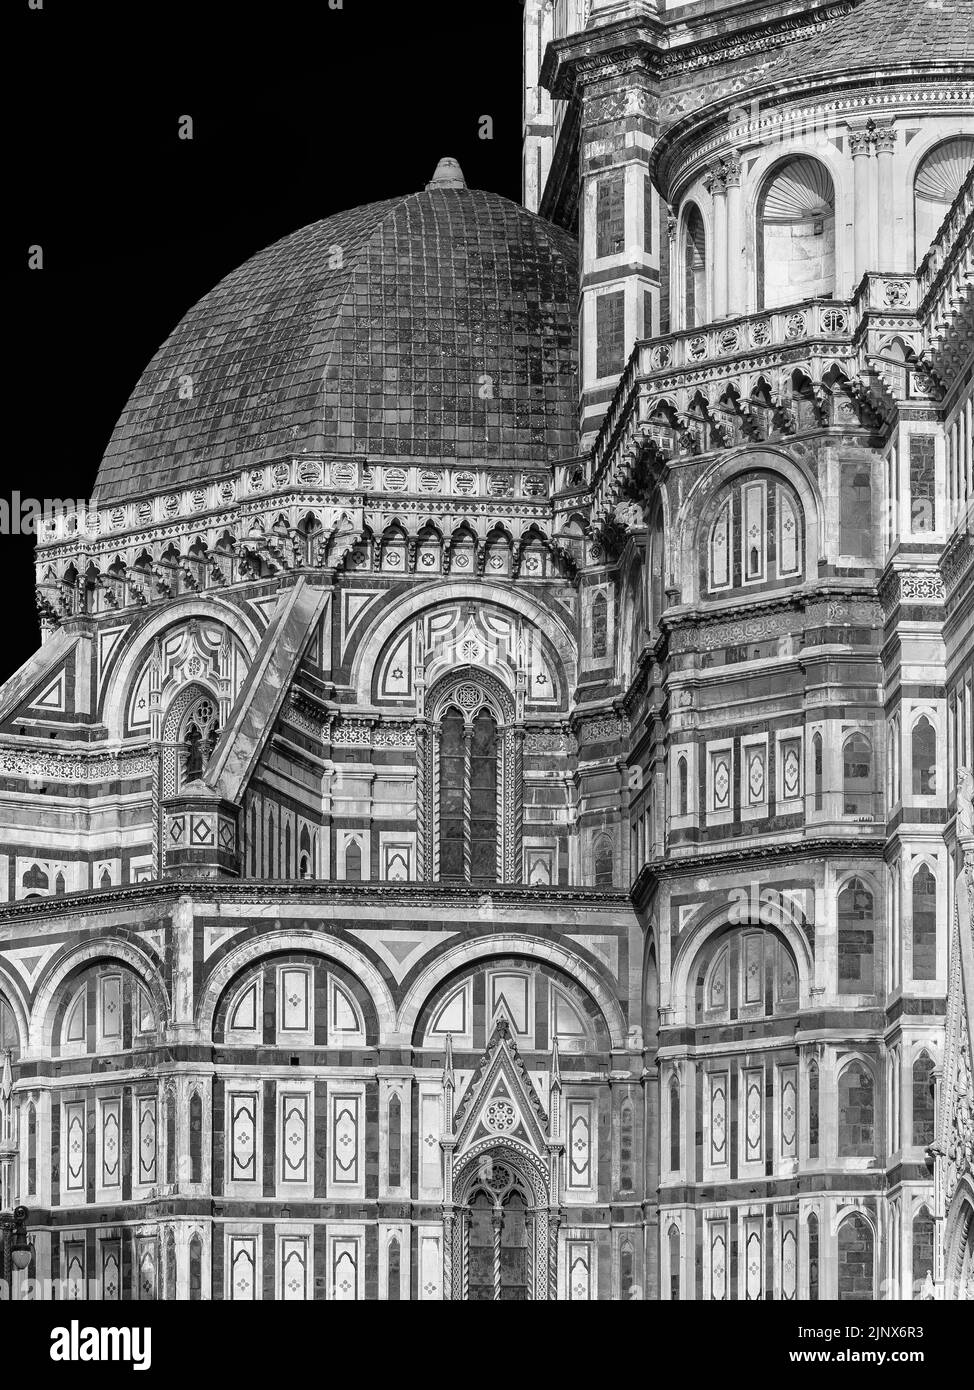 Arquitectura gótica y renacentista en Florencia. Vista parcial de Santa Maria del Fiore (Santa María de la Flor) 14-15th capilla cúpula anche siglo (Blac Foto de stock